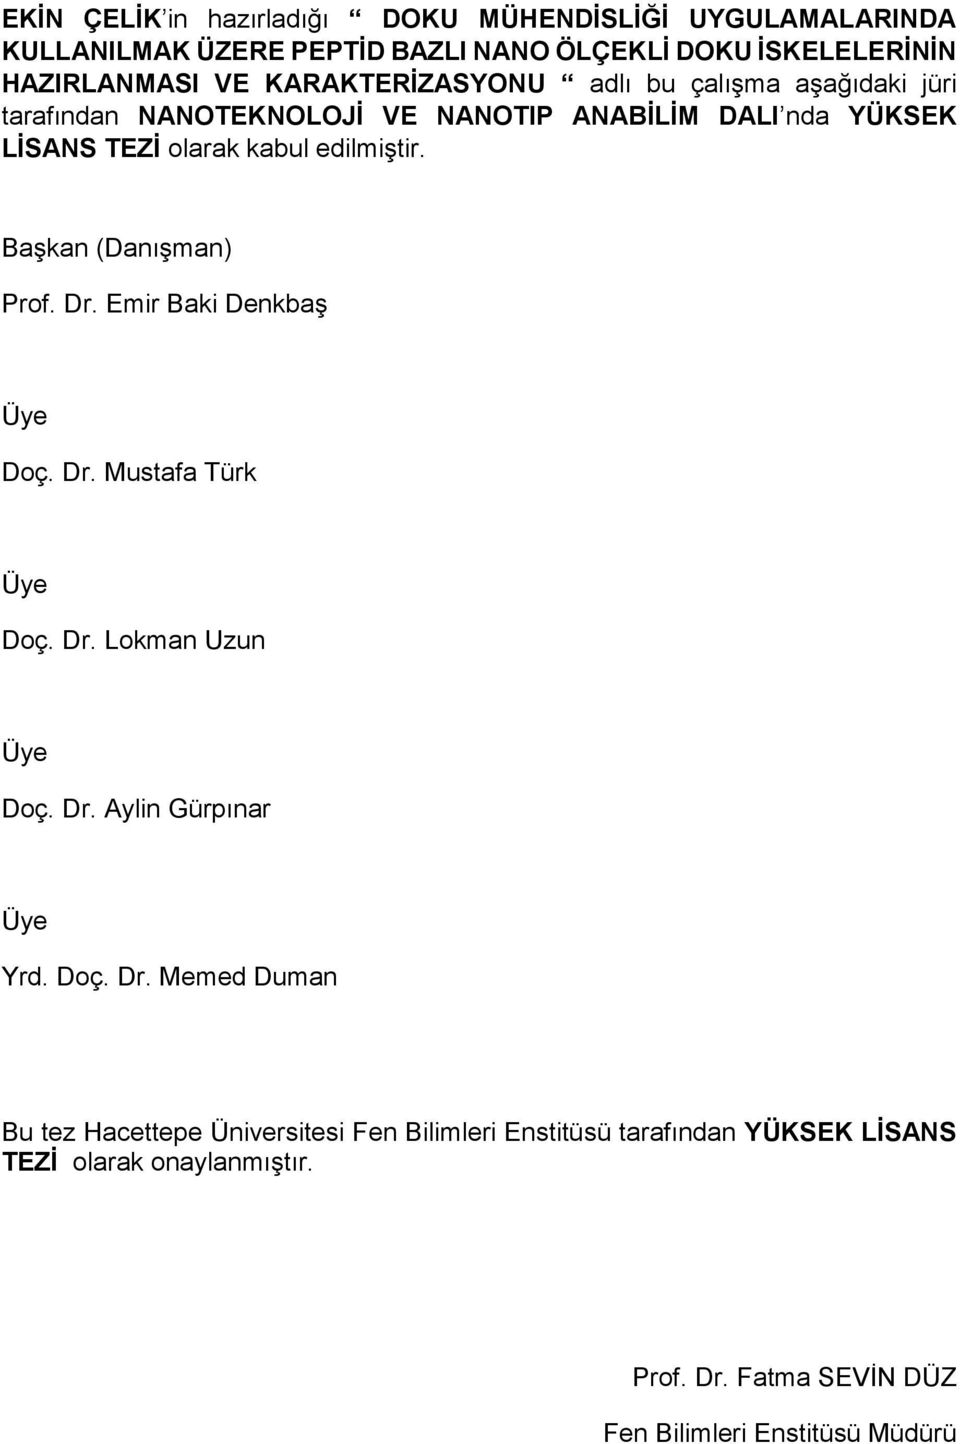 Başkan (Danışman) Prof. Dr. Emir Baki Denkbaş Üye Doç. Dr. Mustafa Türk Üye Doç. Dr. Lokman Uzun Üye Doç. Dr. Aylin Gürpınar Üye Yrd. Doç. Dr. Memed Duman Bu tez Hacettepe Üniversitesi Fen Bilimleri Enstitüsü tarafından YÜKSEK LİSANS TEZİ olarak onaylanmıştır.